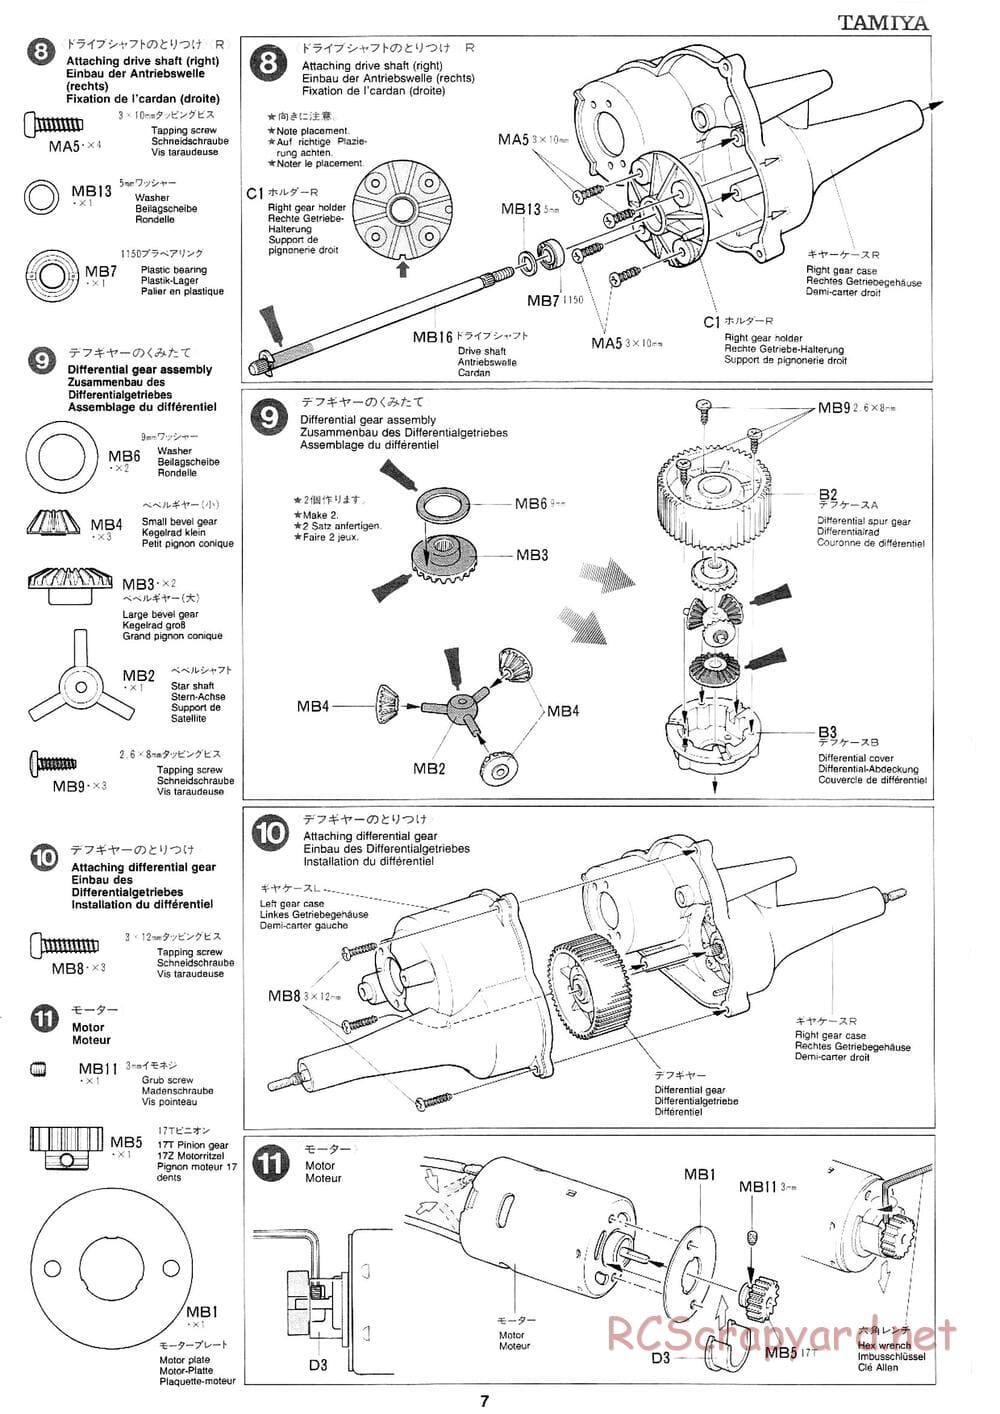 Tamiya - Mad Bull Chassis - Manual - Page 7